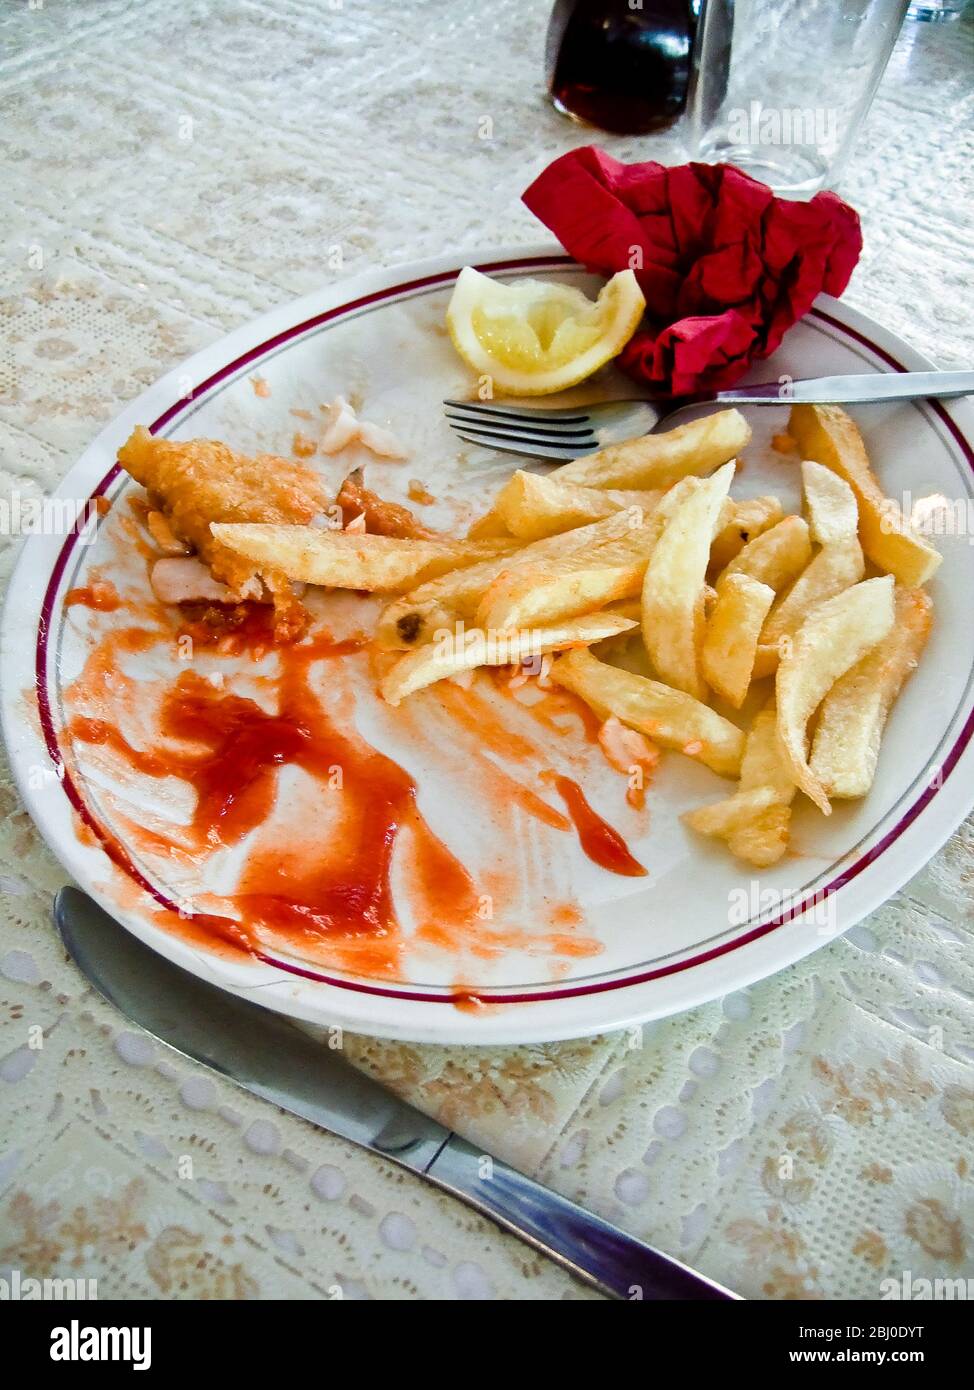 Reste auf dem Teller nach dem Essen von Fish and Chips im Restaurant. - Stockfoto